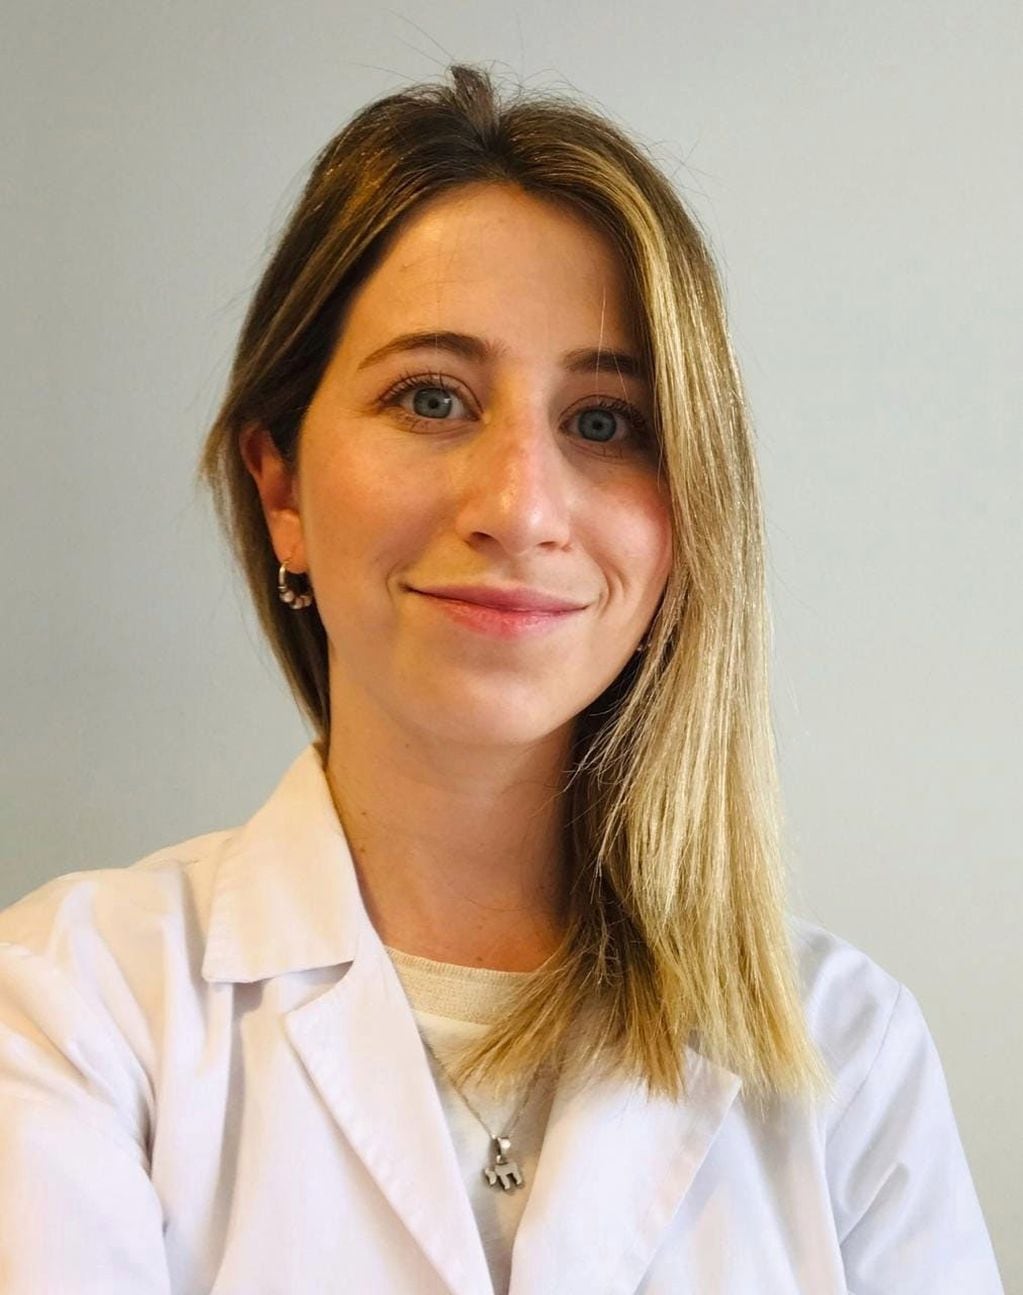 Daniela Sevilla es médica cardióloga y la creadora de los perfiles de Instagram y Facebook “Cardio en redes”. 